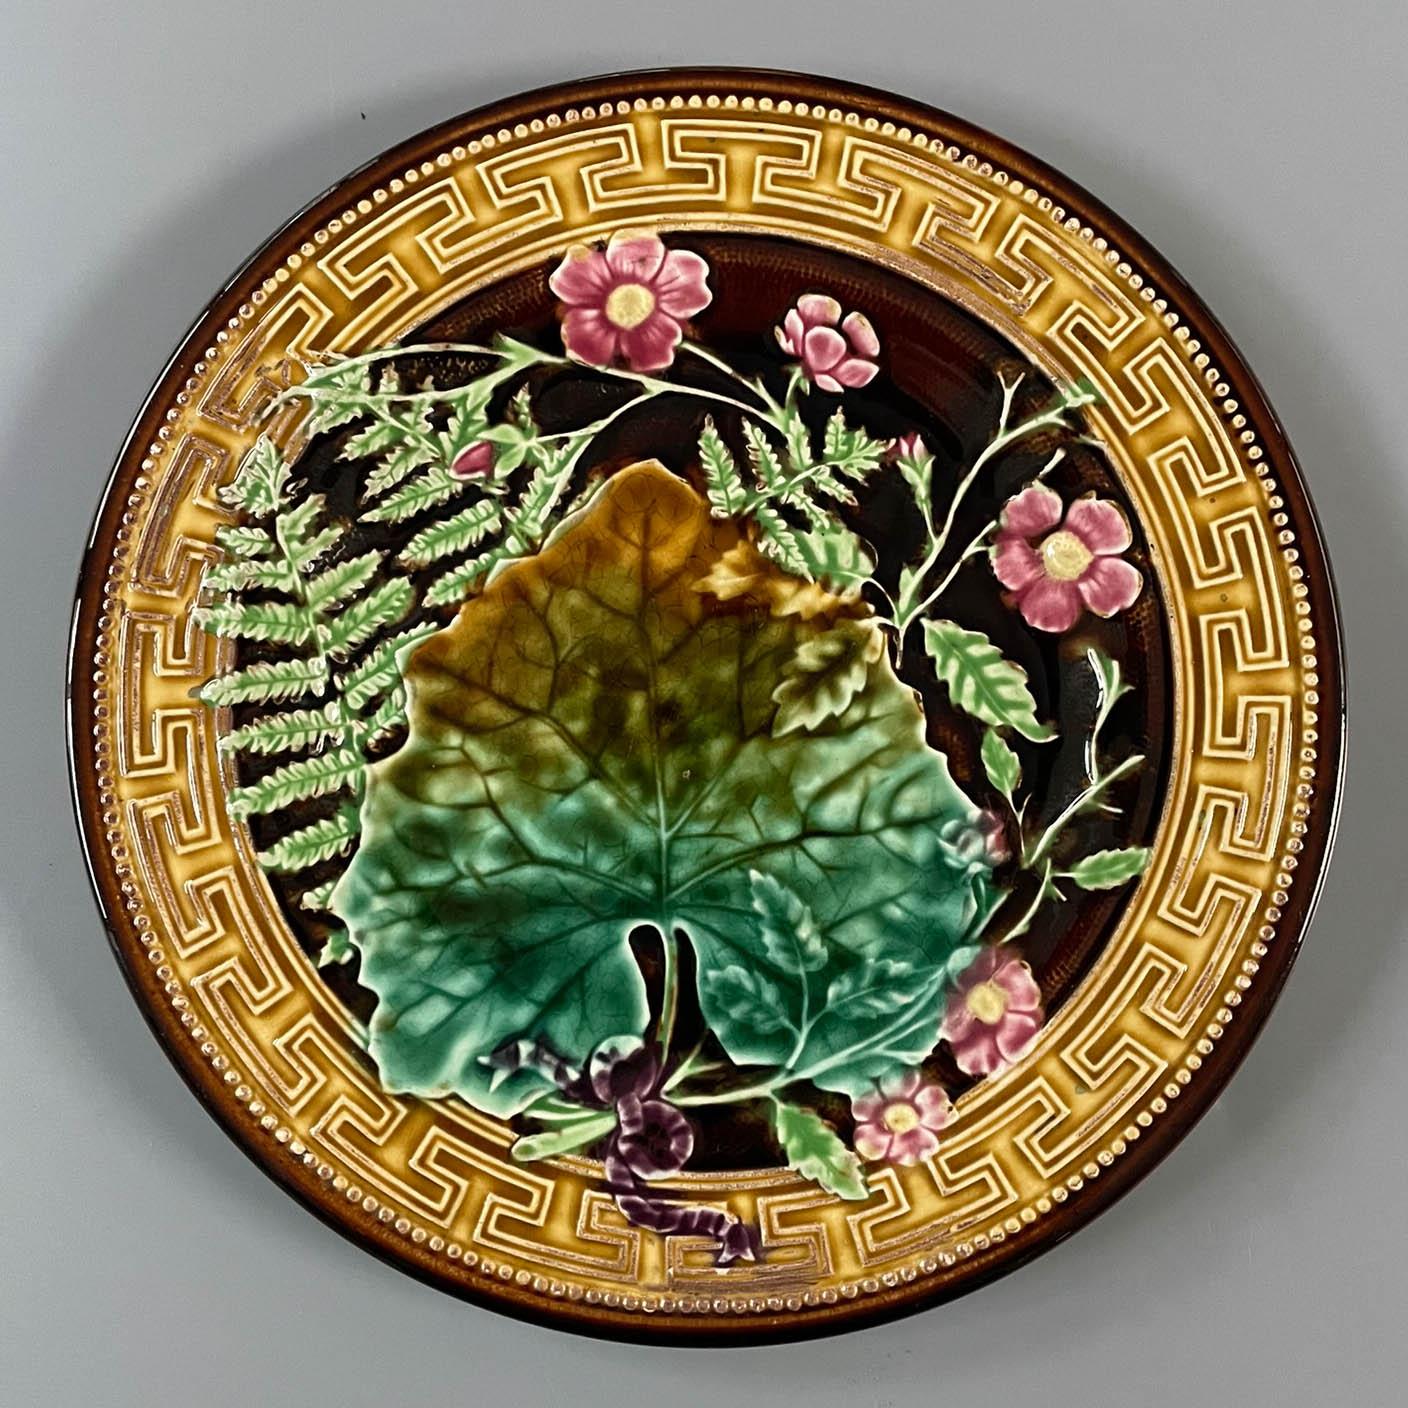 Ein französischer Majolikateller aus glasierter Keramik des 19. Jahrhunderts von H. B. Boulanger Choisy-le-Roi. Muster aus Farnen und rosa Blüten unter einem großen Blatt, gebunden mit einer lila Schleife. Kräftige Grün-, Gelb- und Rosatöne auf